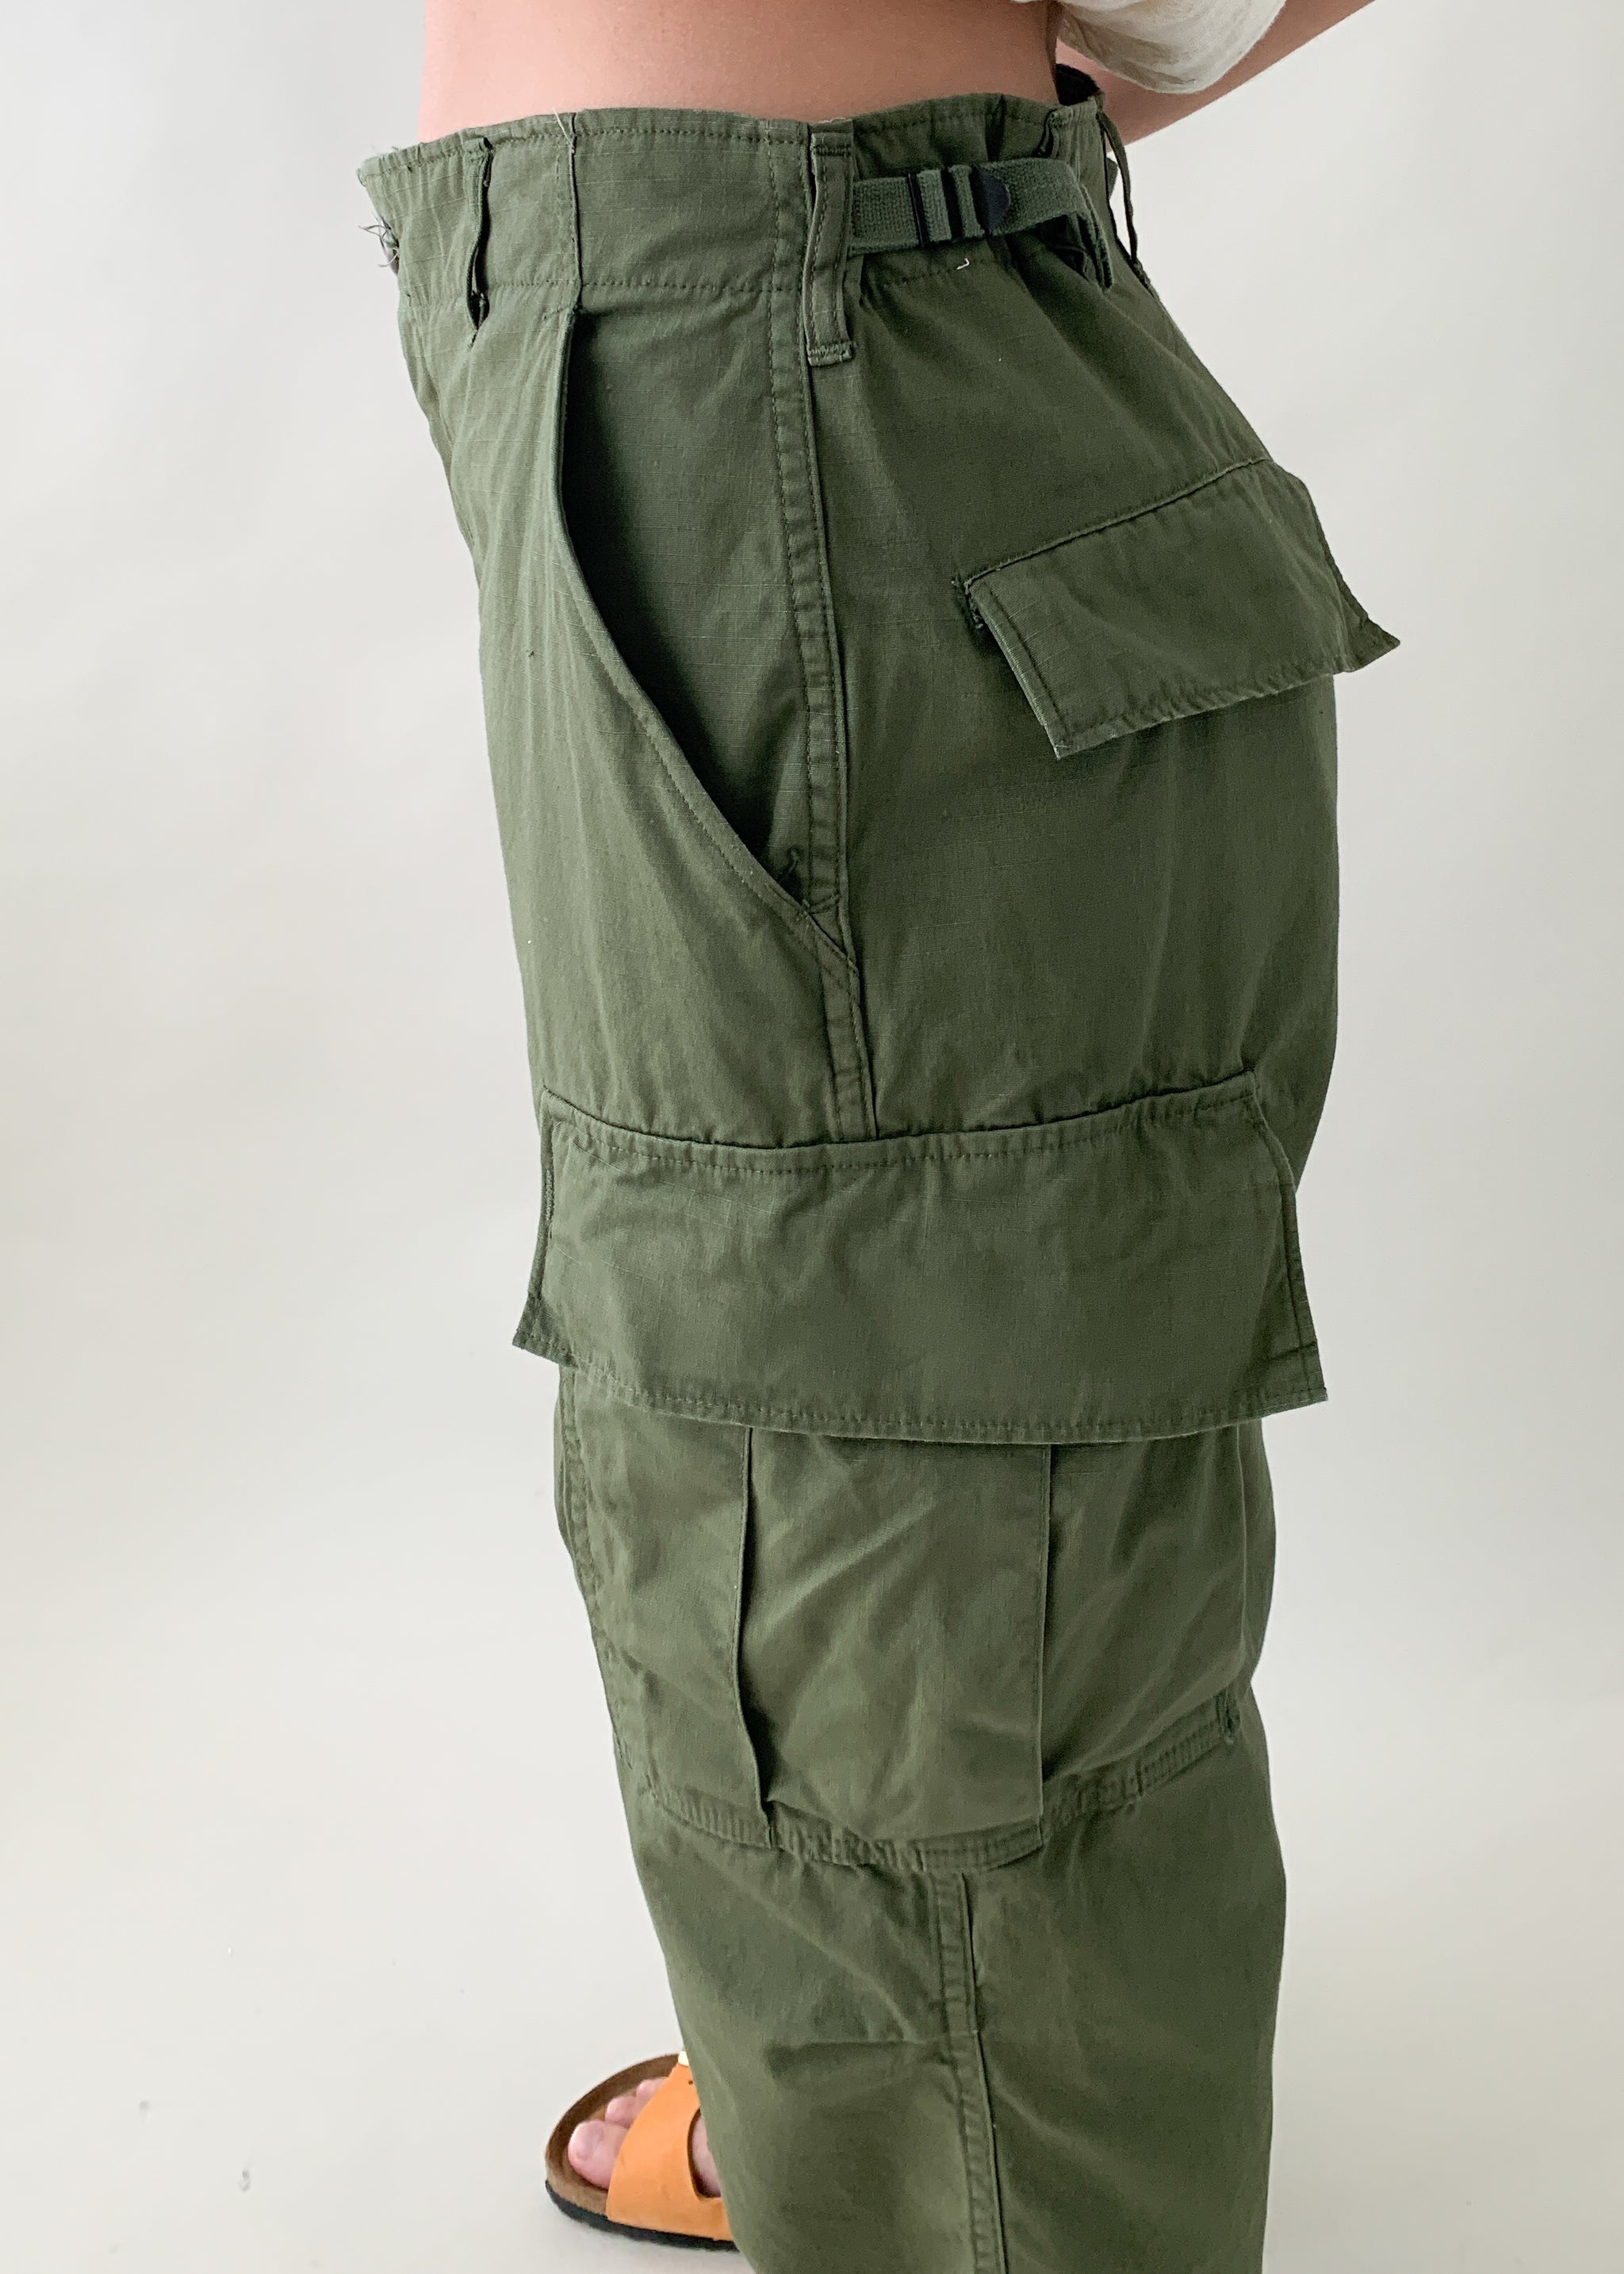 Vintage 1960s US Army Cargo Pants - Raleigh Vintage